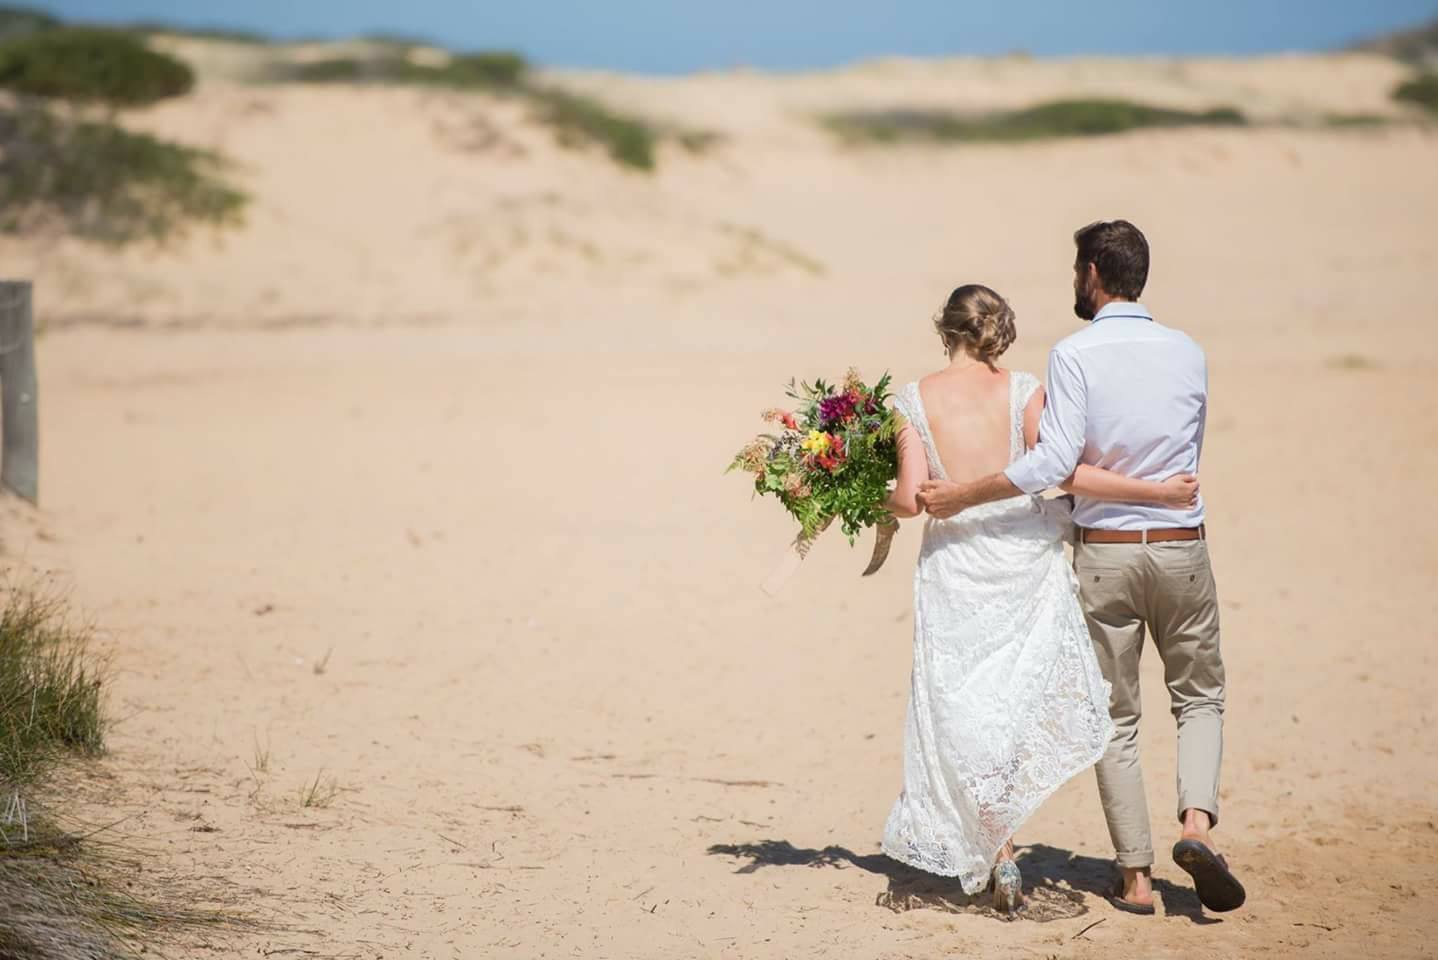 Sunday's bridal fair looks to build Sapphire Coast as a wedding destination